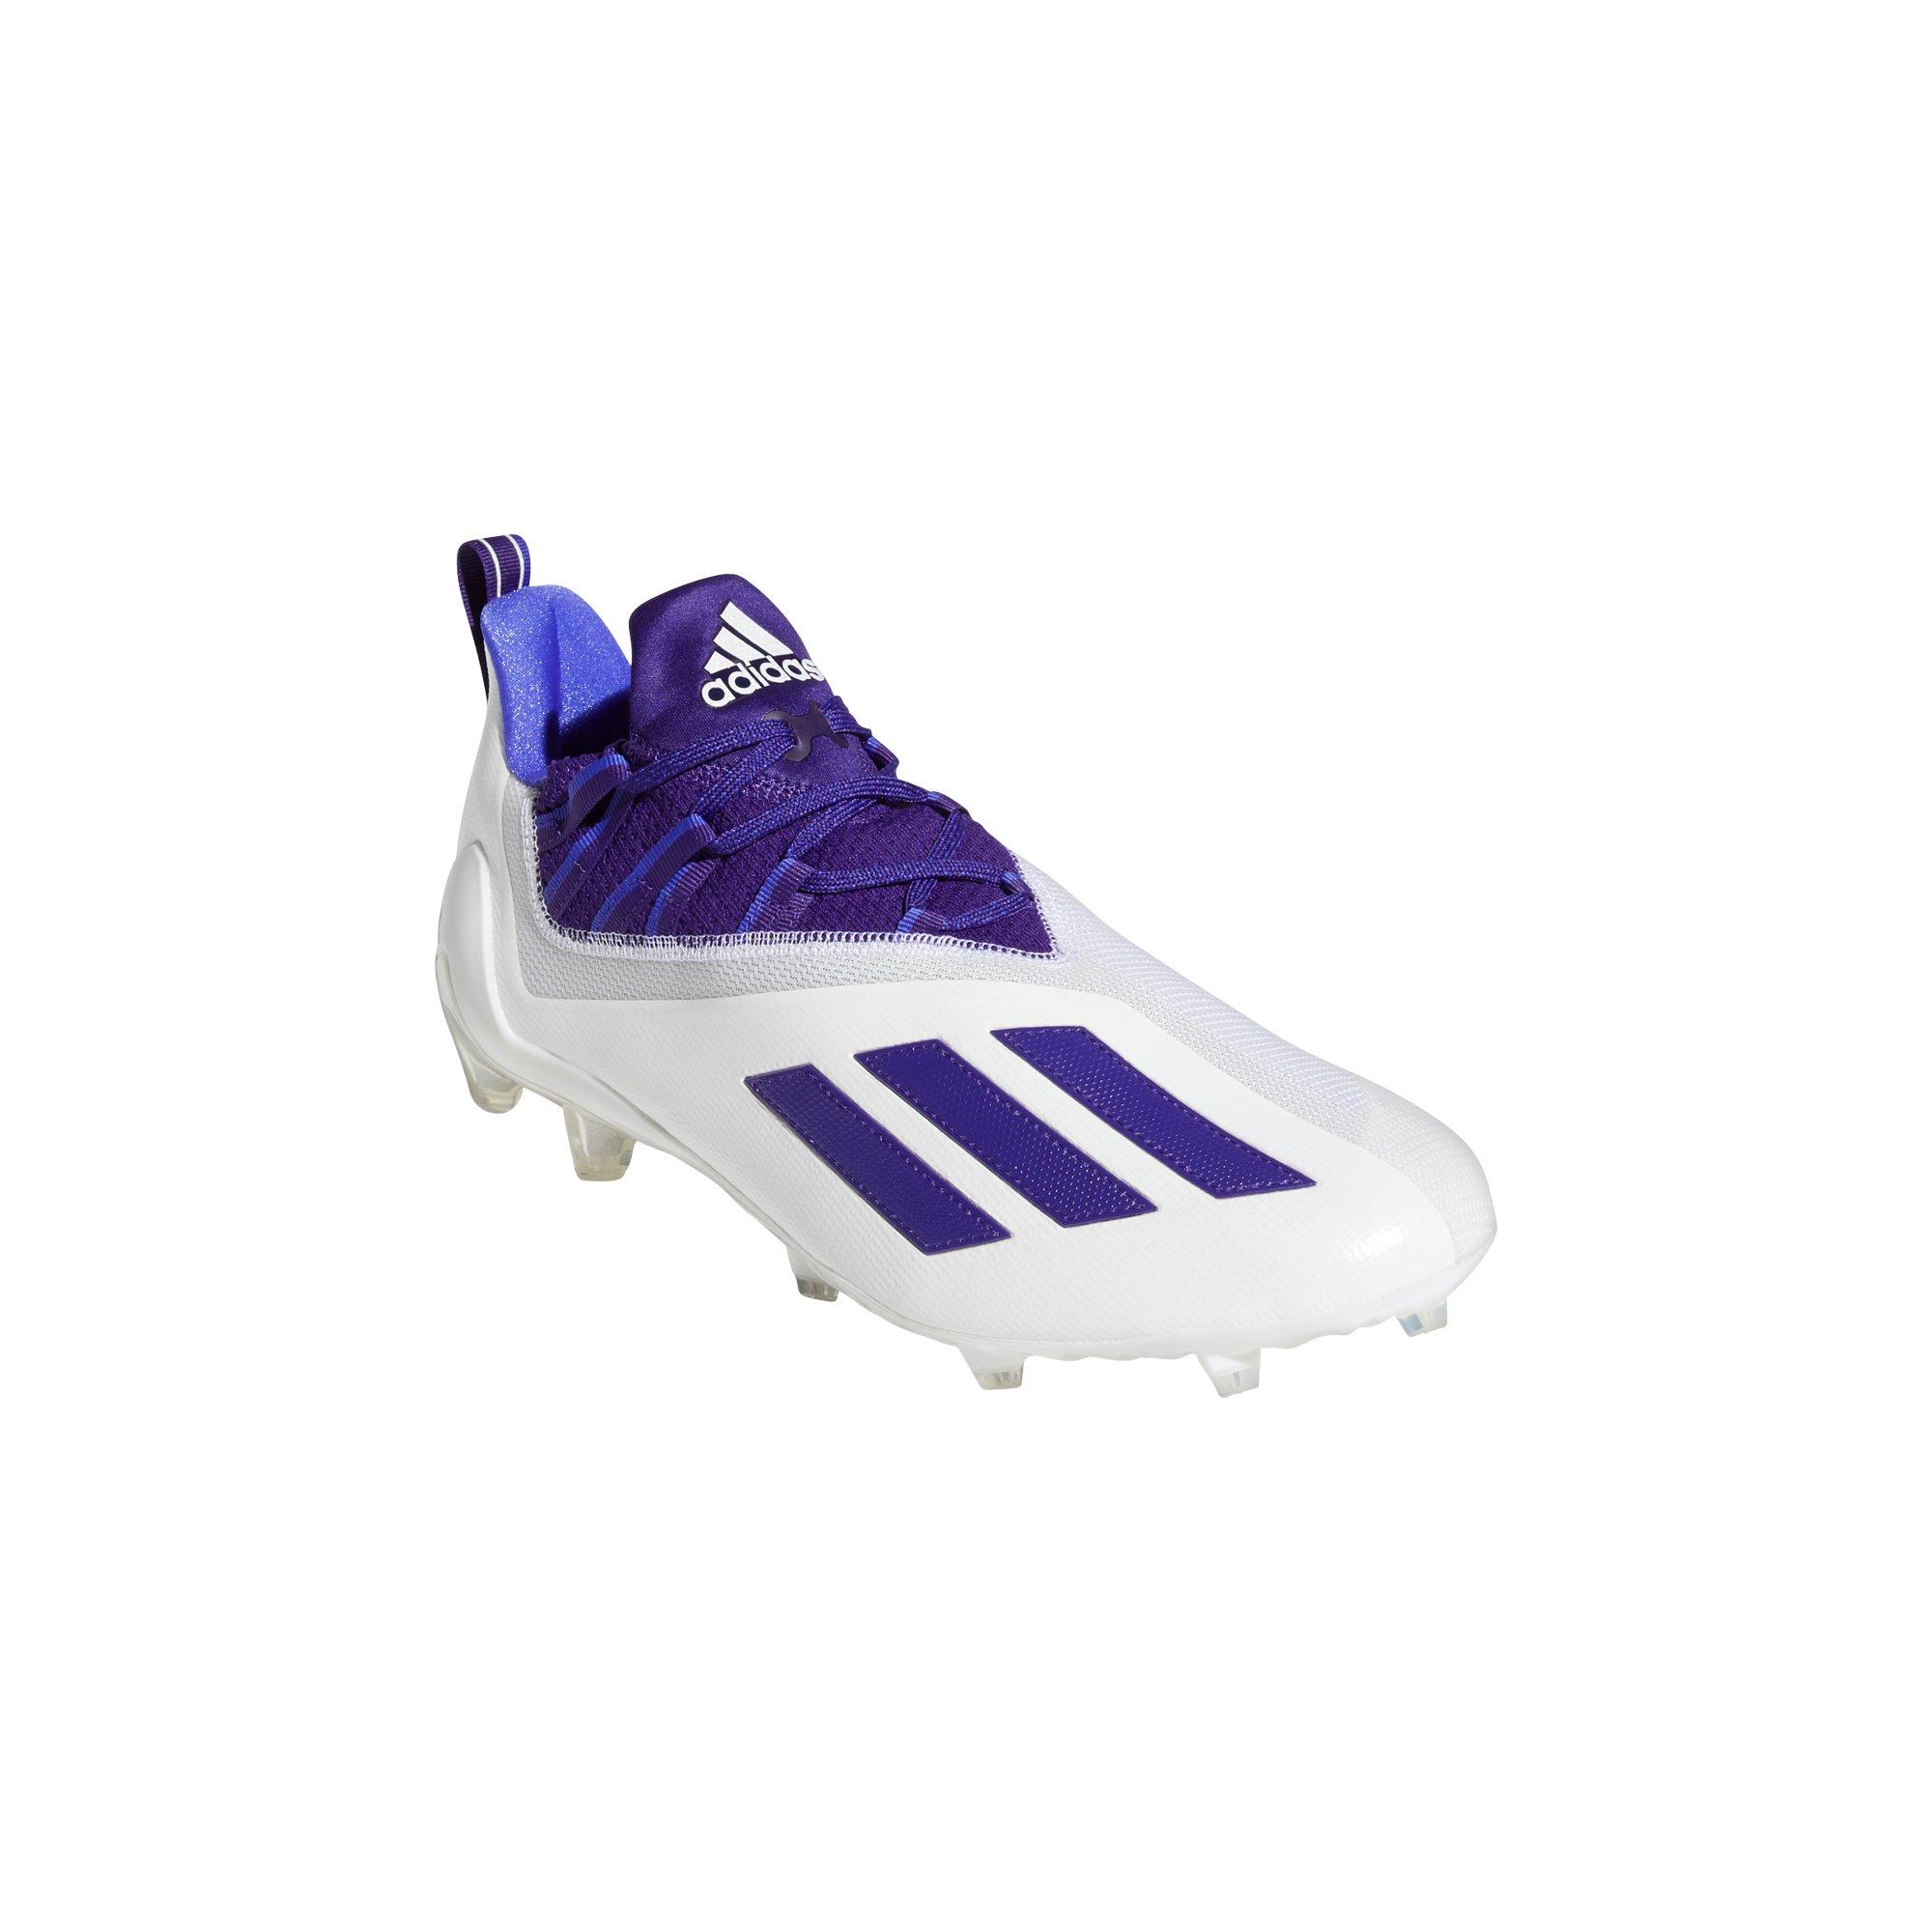 adidas football cleats purple